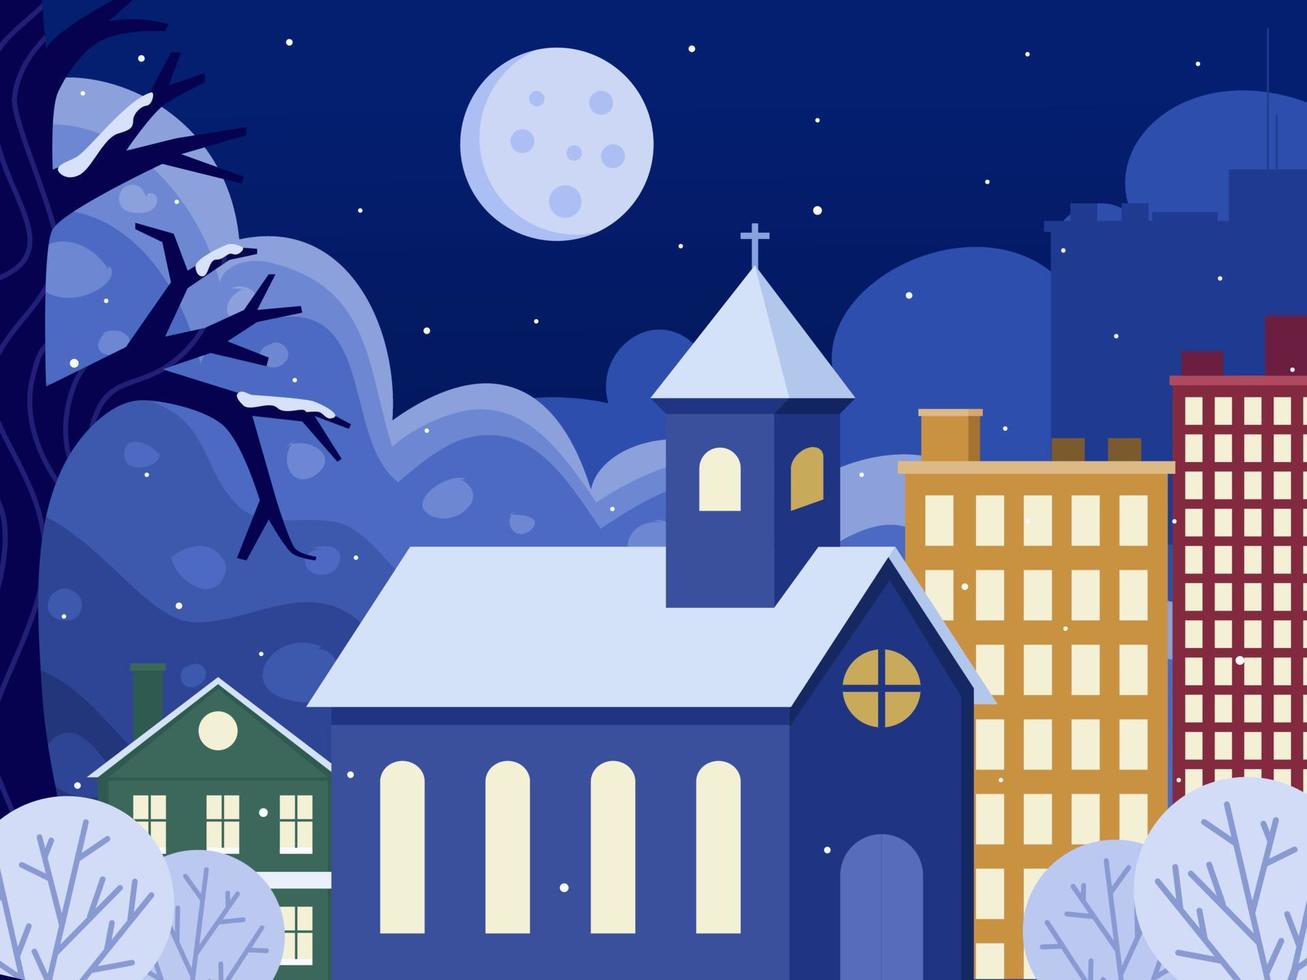 Winternachtweihnachtsszenenillustration mit Kirchen und hohem Gebäude in der Stadt. Weihnachtsstadt Stadtpanorama. kann für Grußkarten, Poster, Banner, Postkarten, Web, Print usw. verwendet werden. vektor